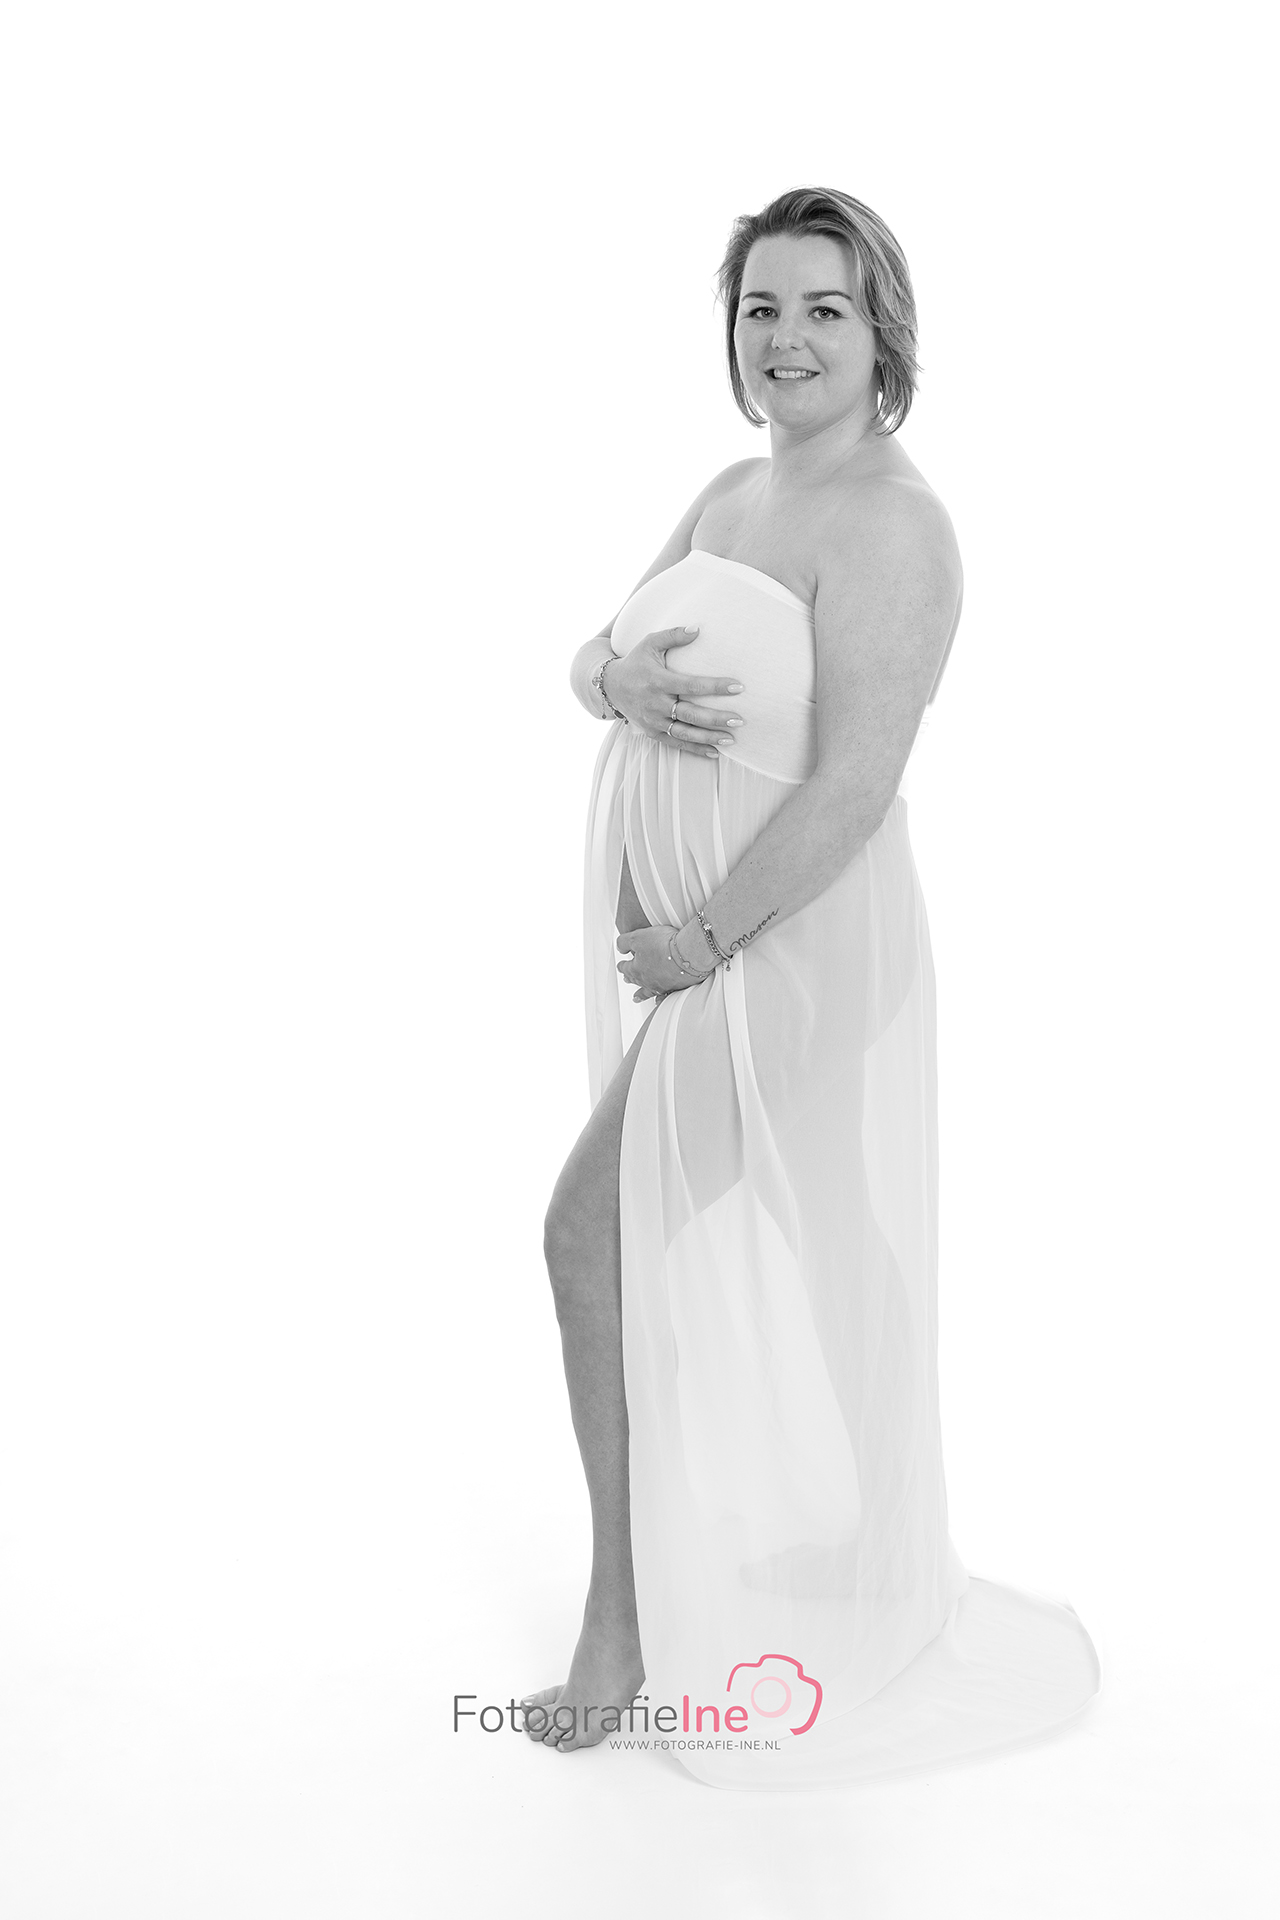 Fotografie Ine van Boerdonk Fotograaf Boekel zwangerschapsshoot belly fotoshoot